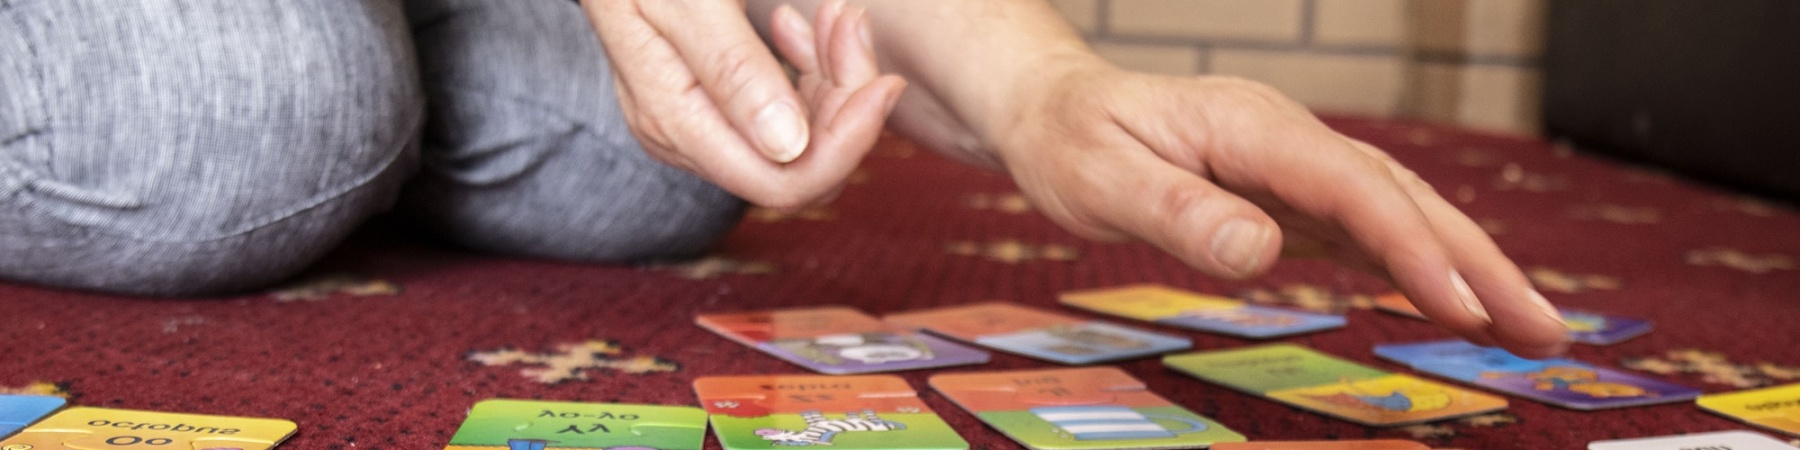 primo piano di card colorate appoggiate a terra e mani di un adulto che le tocca